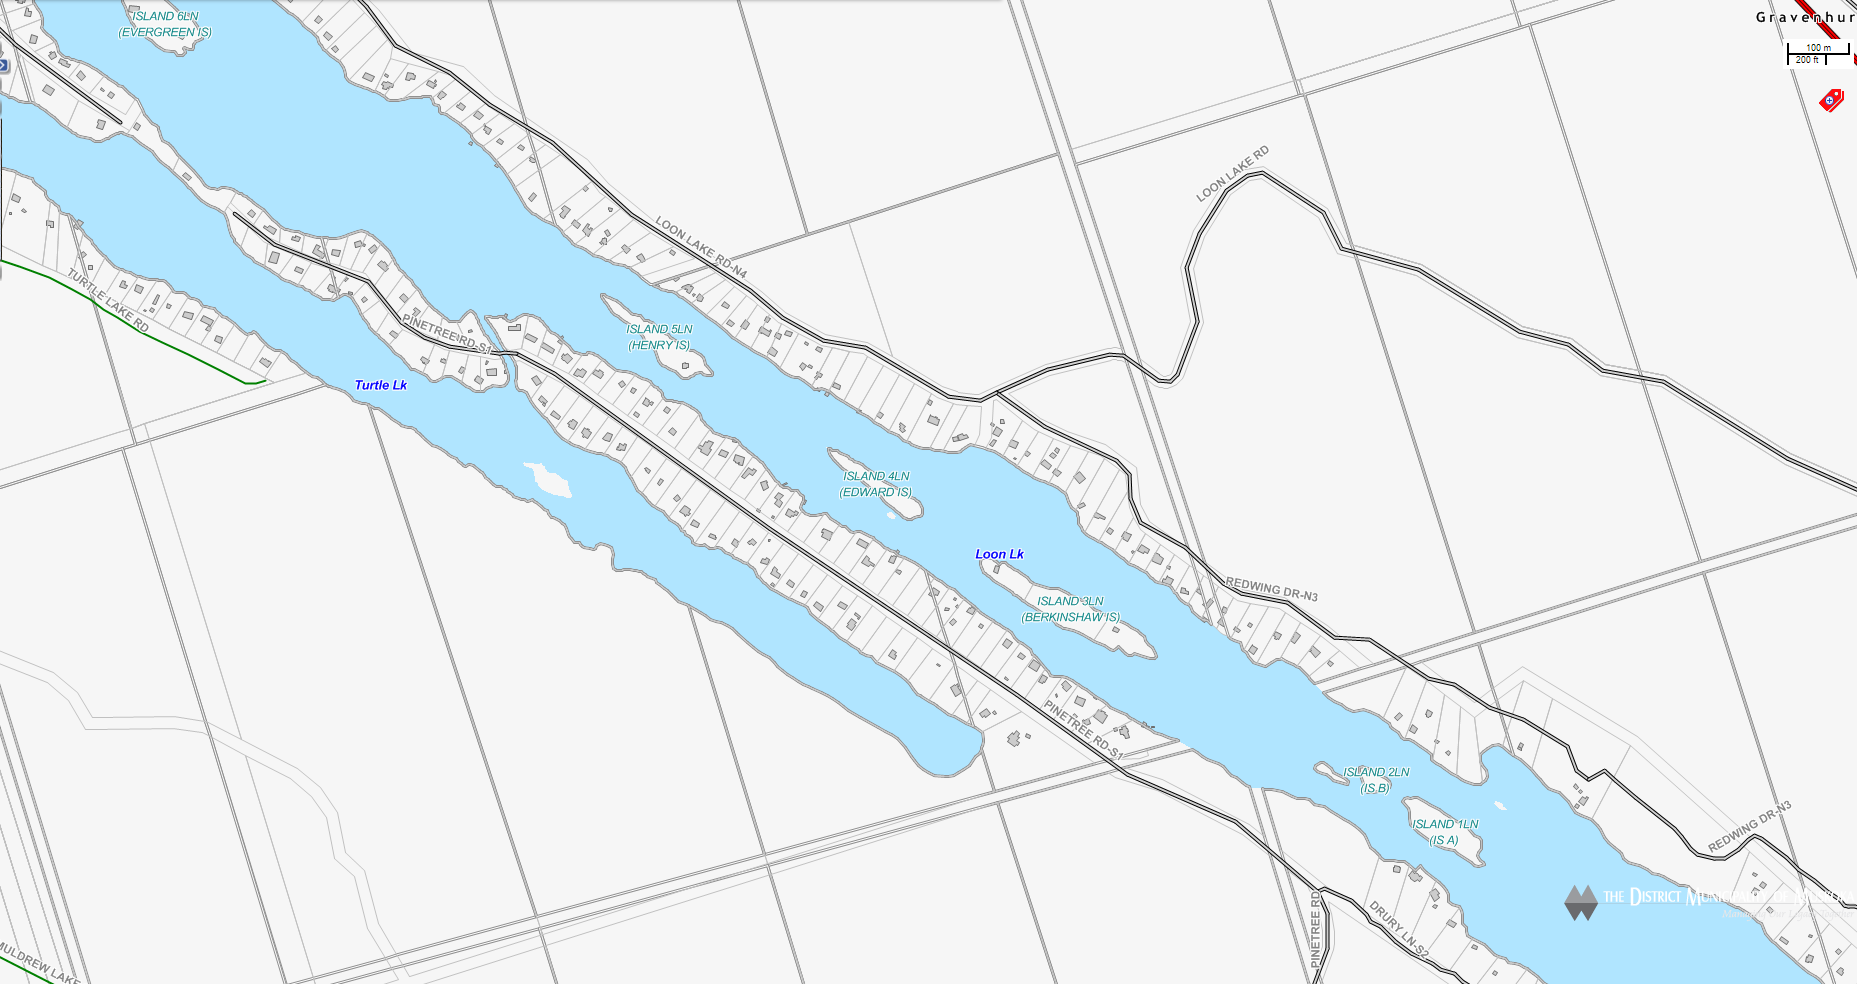 Mainhood Lake Cadastral Map - Mainhood Lake - Muskoka